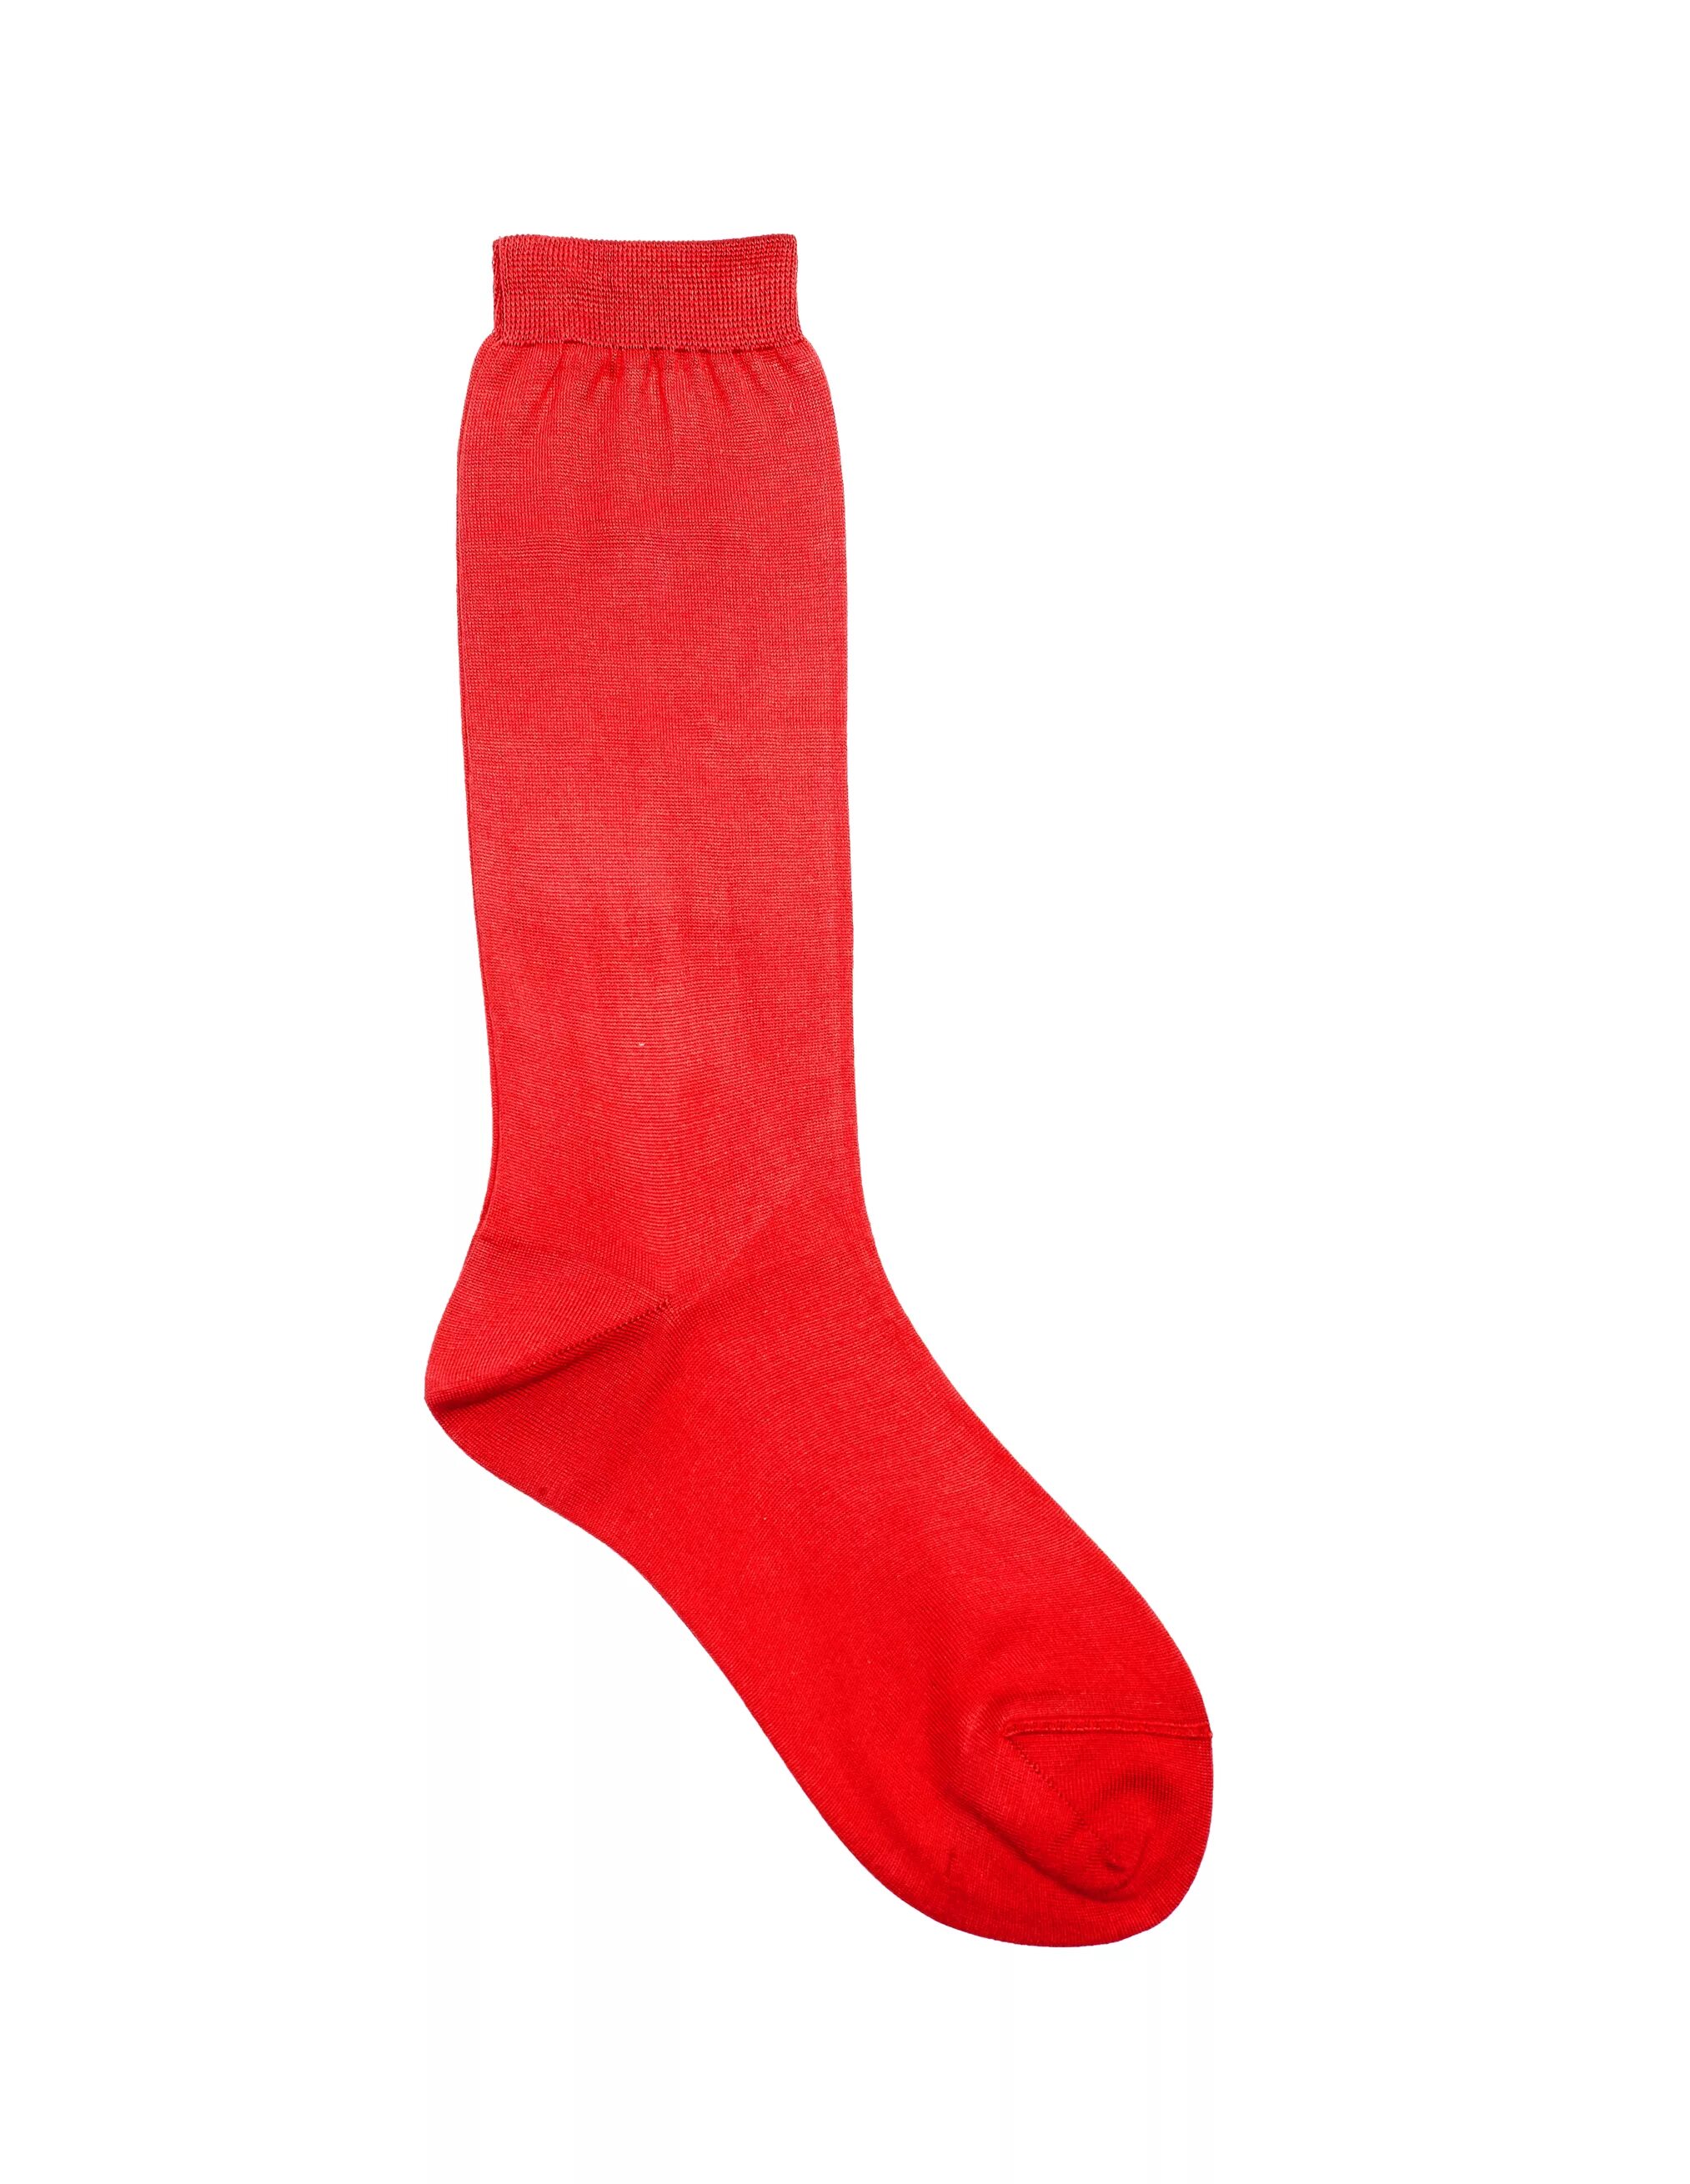 Красные носки. Красные носки женские. Носки красные женские высокие. Шёлковые красные носки. Шелковые носки купить